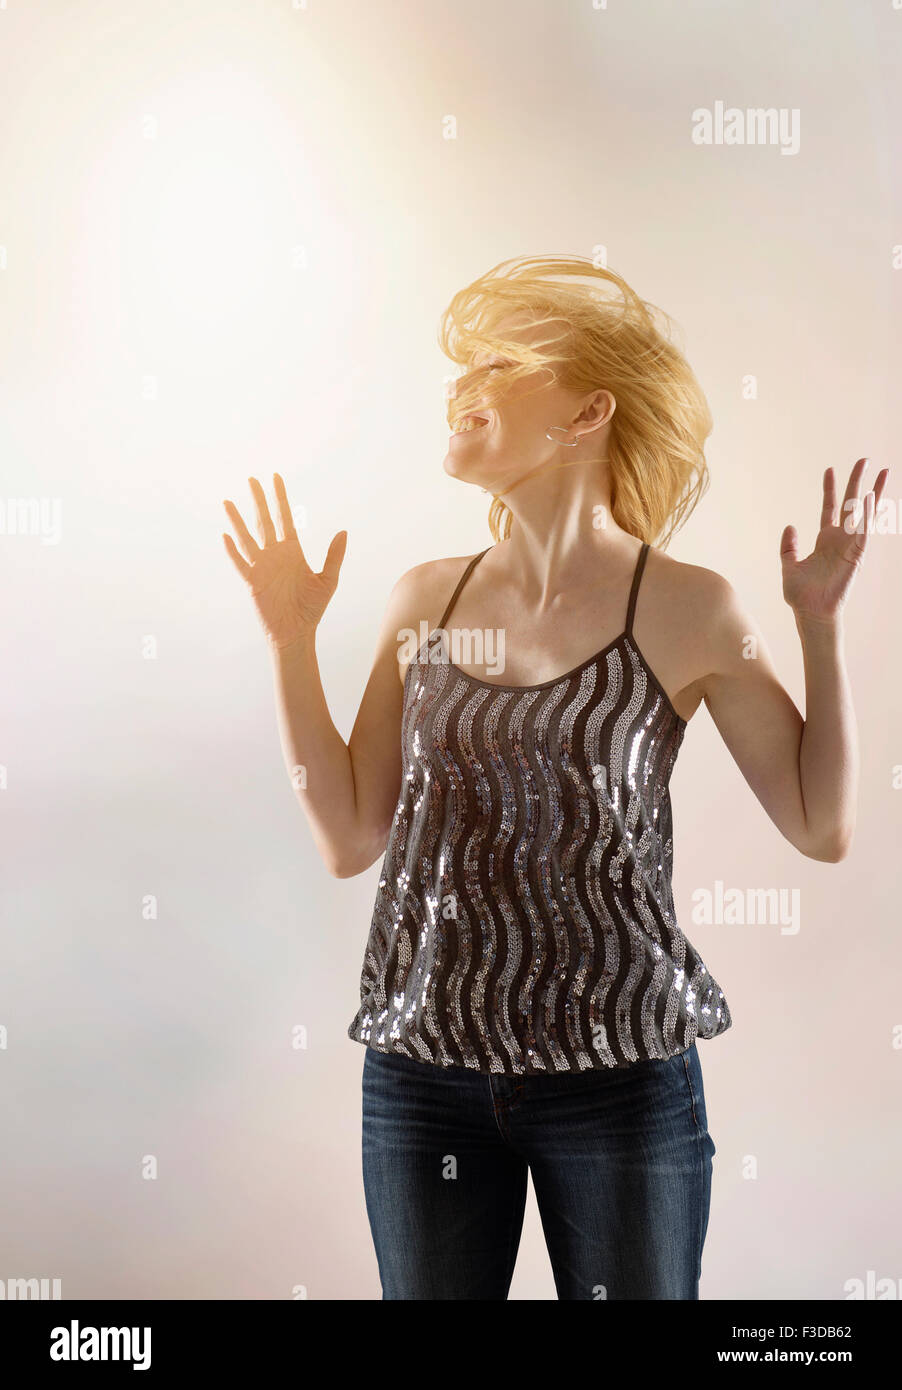 Happy woman dancing in studio Banque D'Images